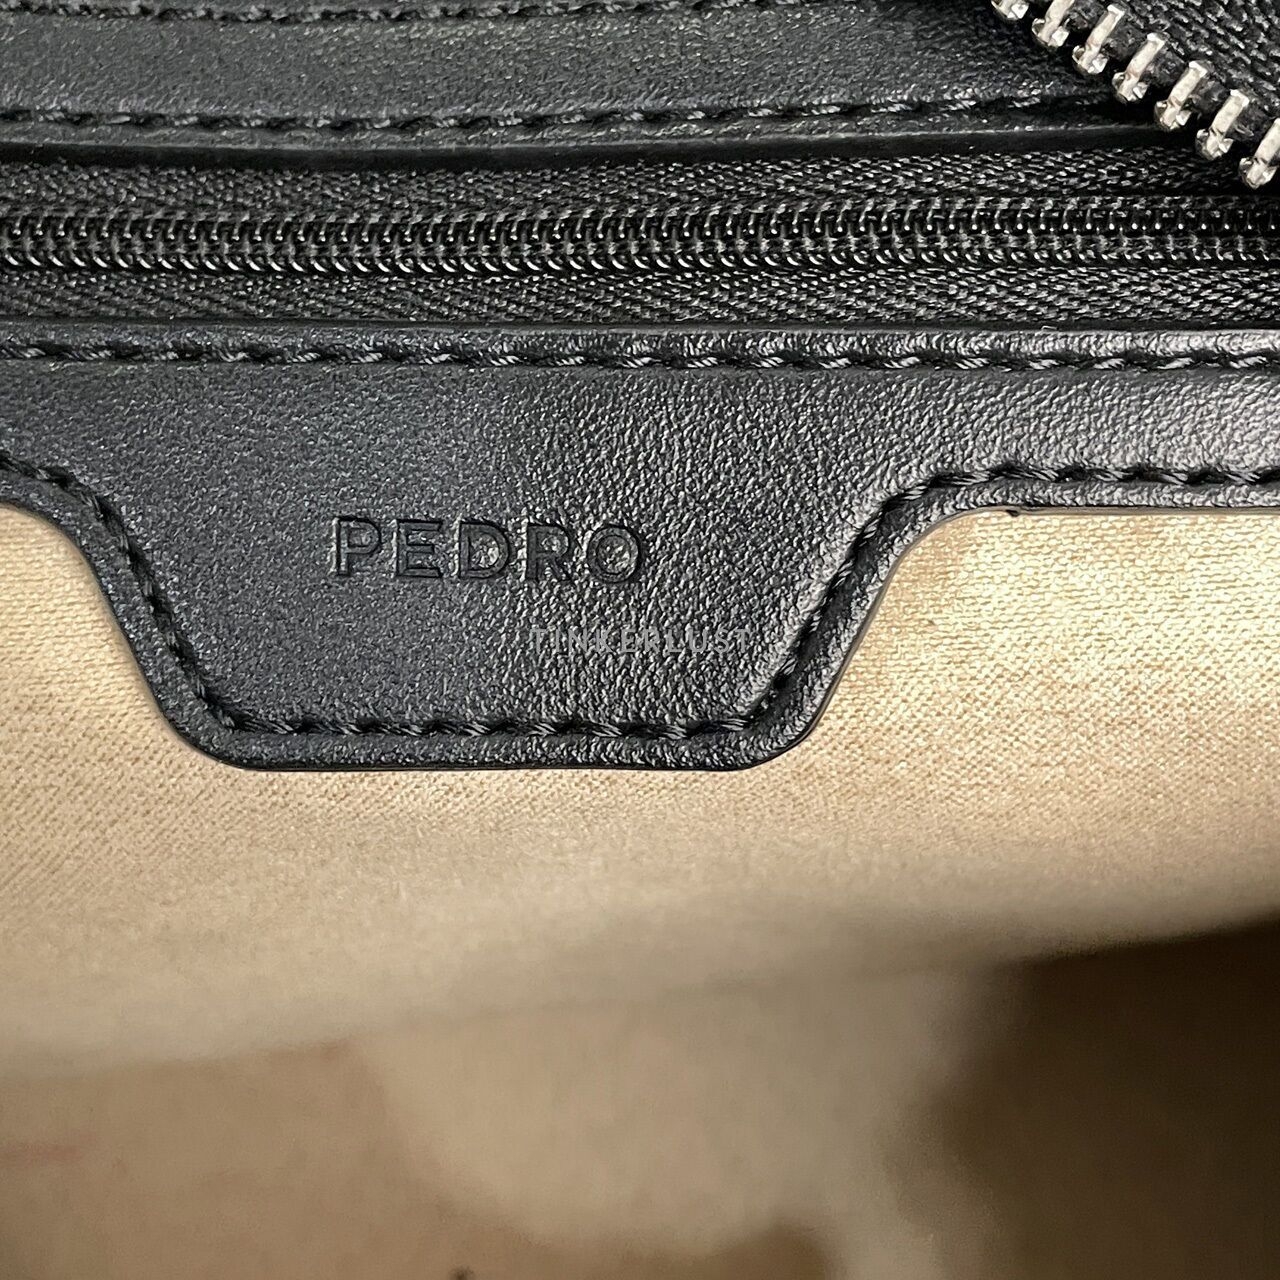 Pedro Black Shoulder Bag